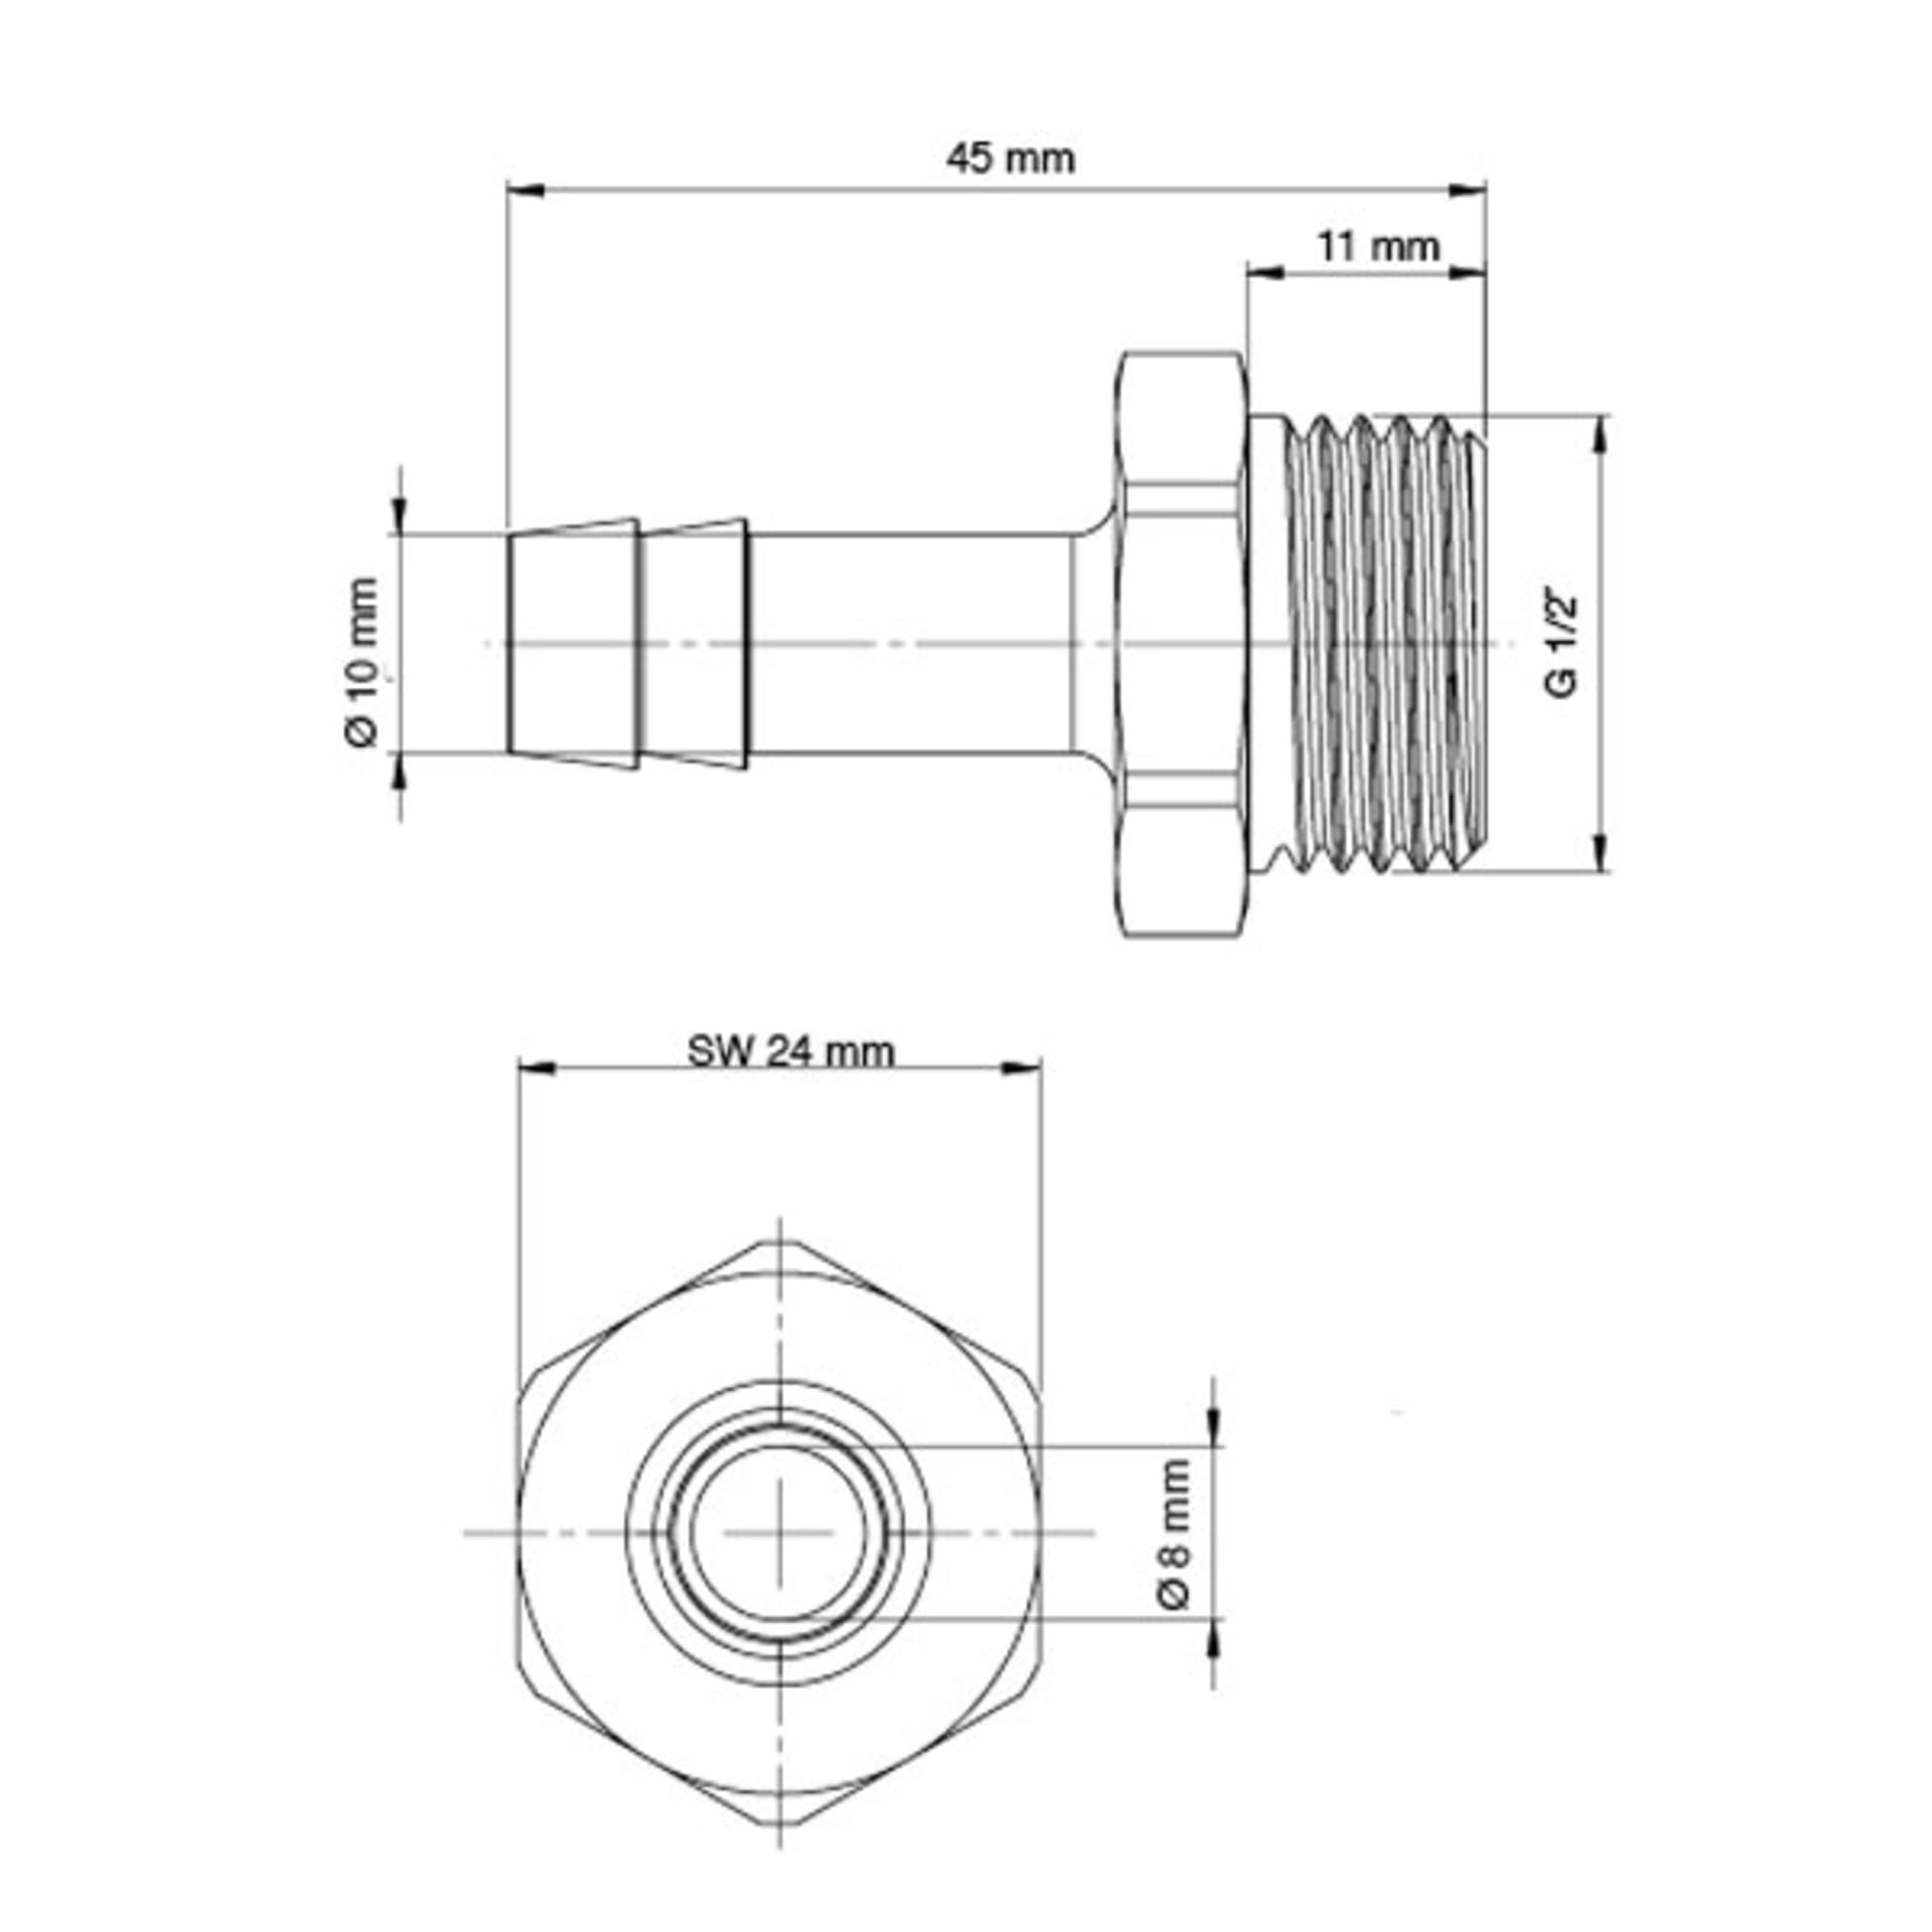 Einschraubschlauchtülle für Innen-Ø 10 mm, Gewinde G 1/2" a, Bild 4